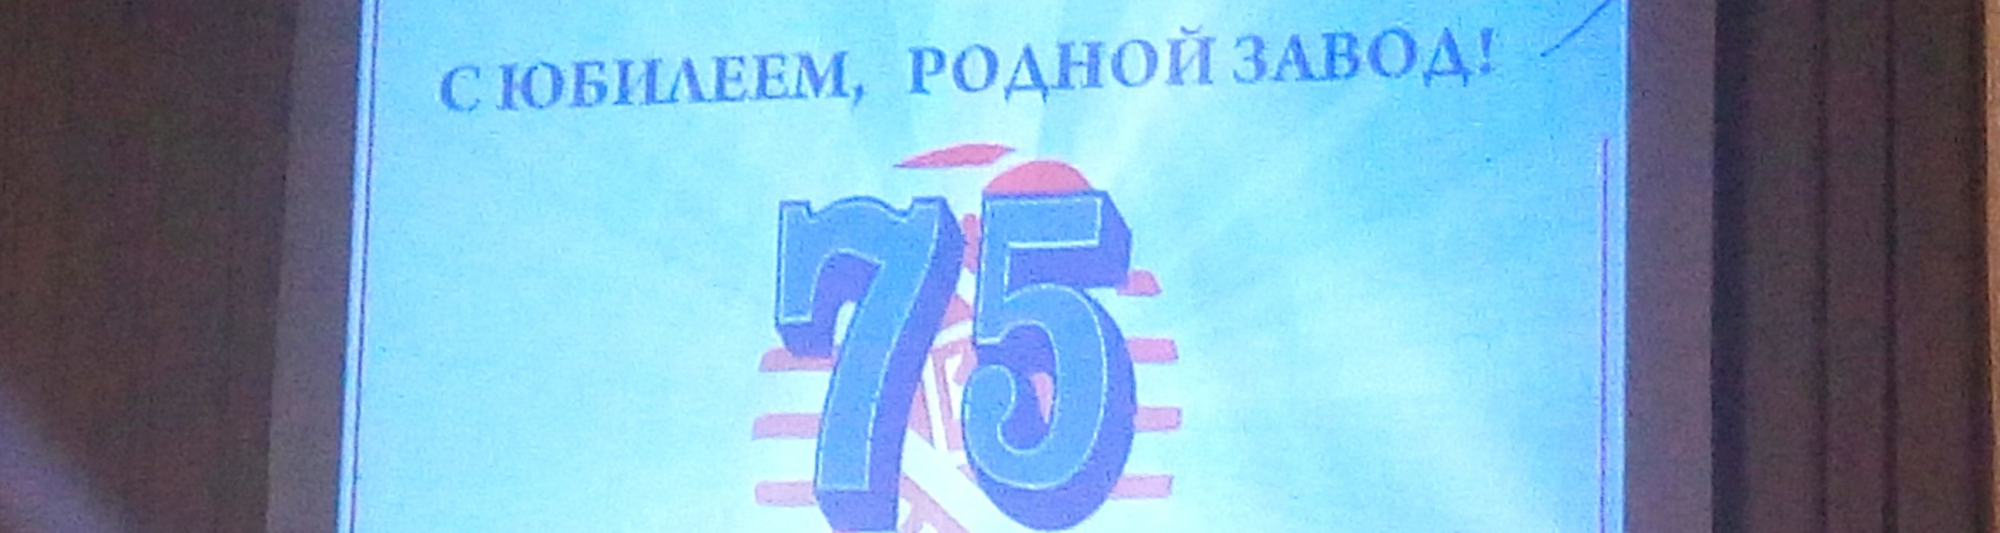 Олег Правдин поздравил коллектив завода резиновой обуви с юбилеем